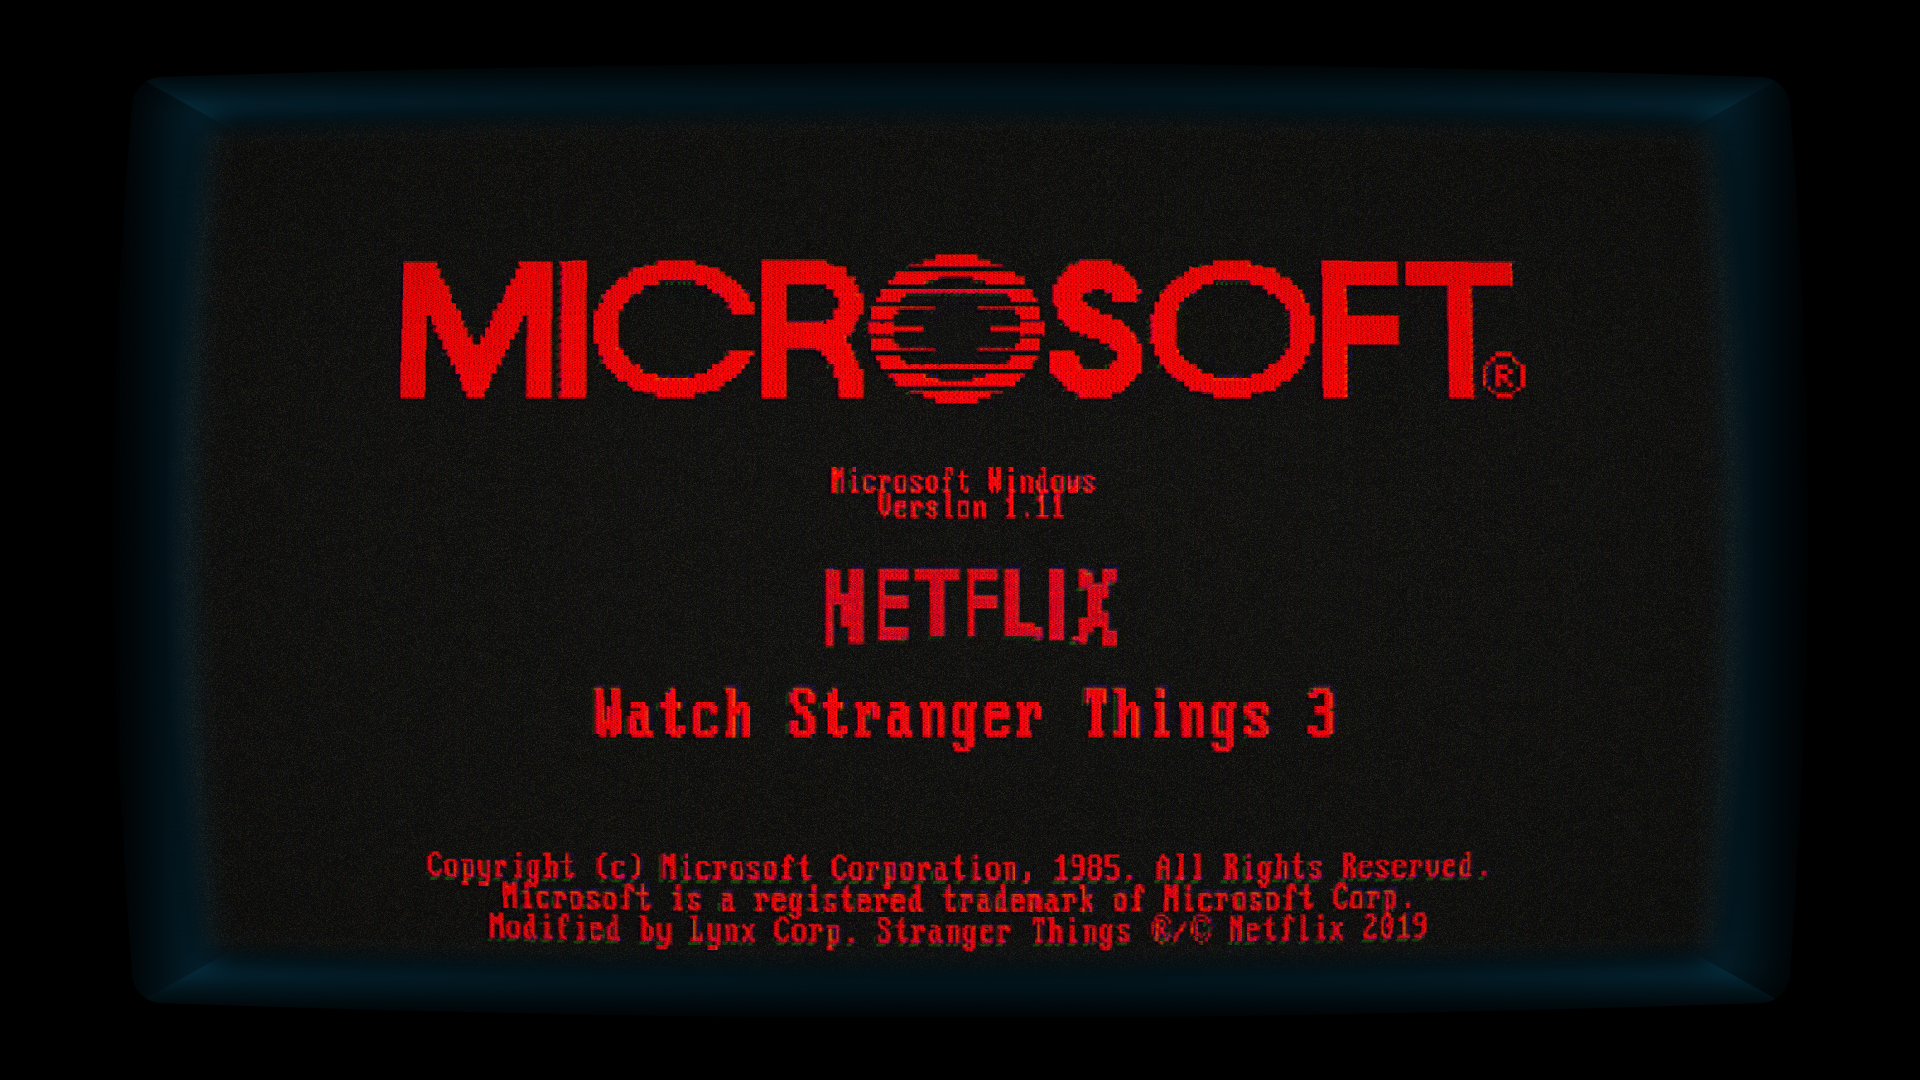 Trải nghiệm Stranger Things vào năm 1985 với Windows phiên bản 1.0 từ Microsoft